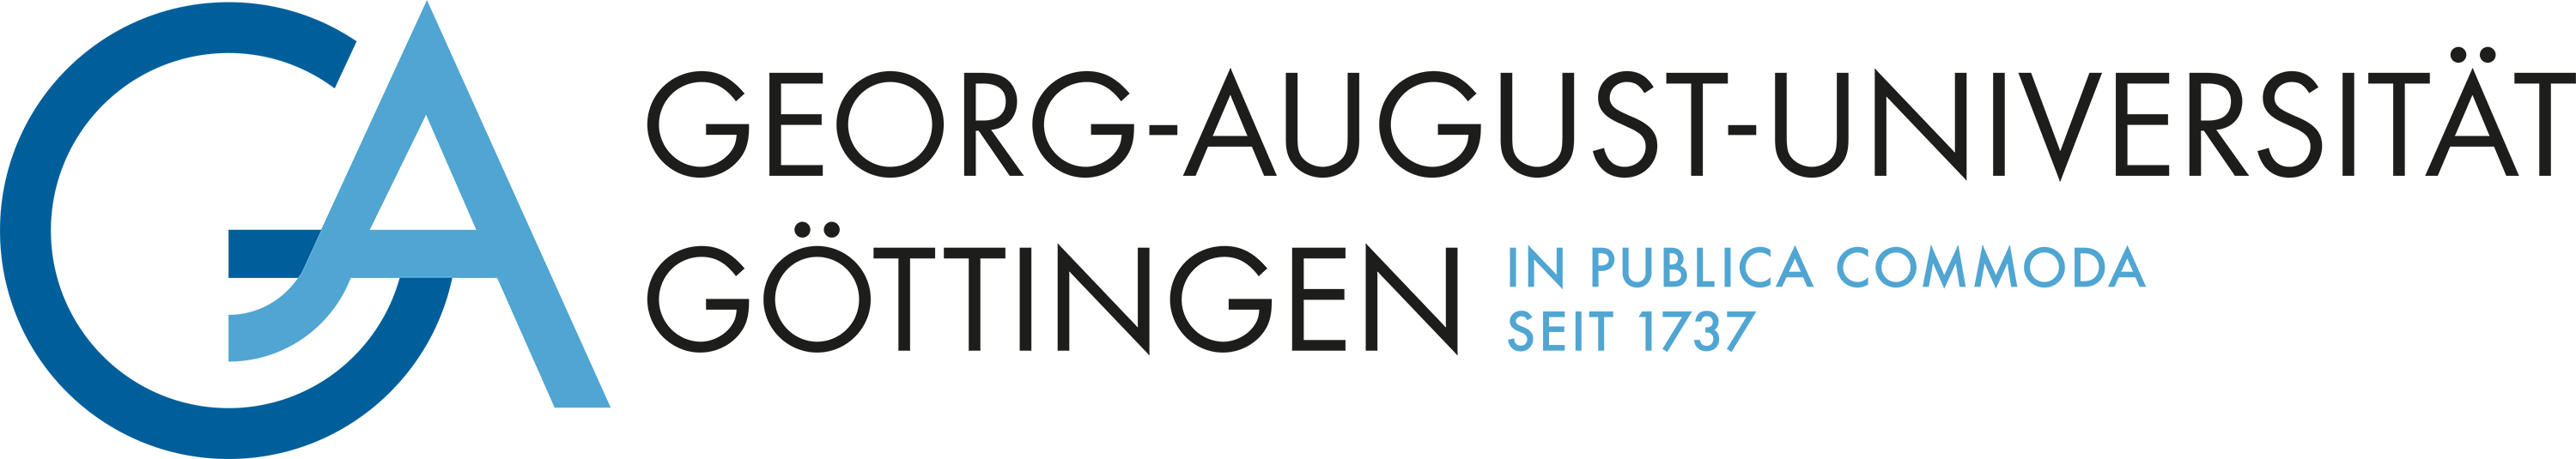 Wissenschaftliche*r Mitarbeiter*in (w/m/d) für Marketing und Konsumentenverhalten - Georg-August-Universität Göttingen - Universität Göttingen - Logo